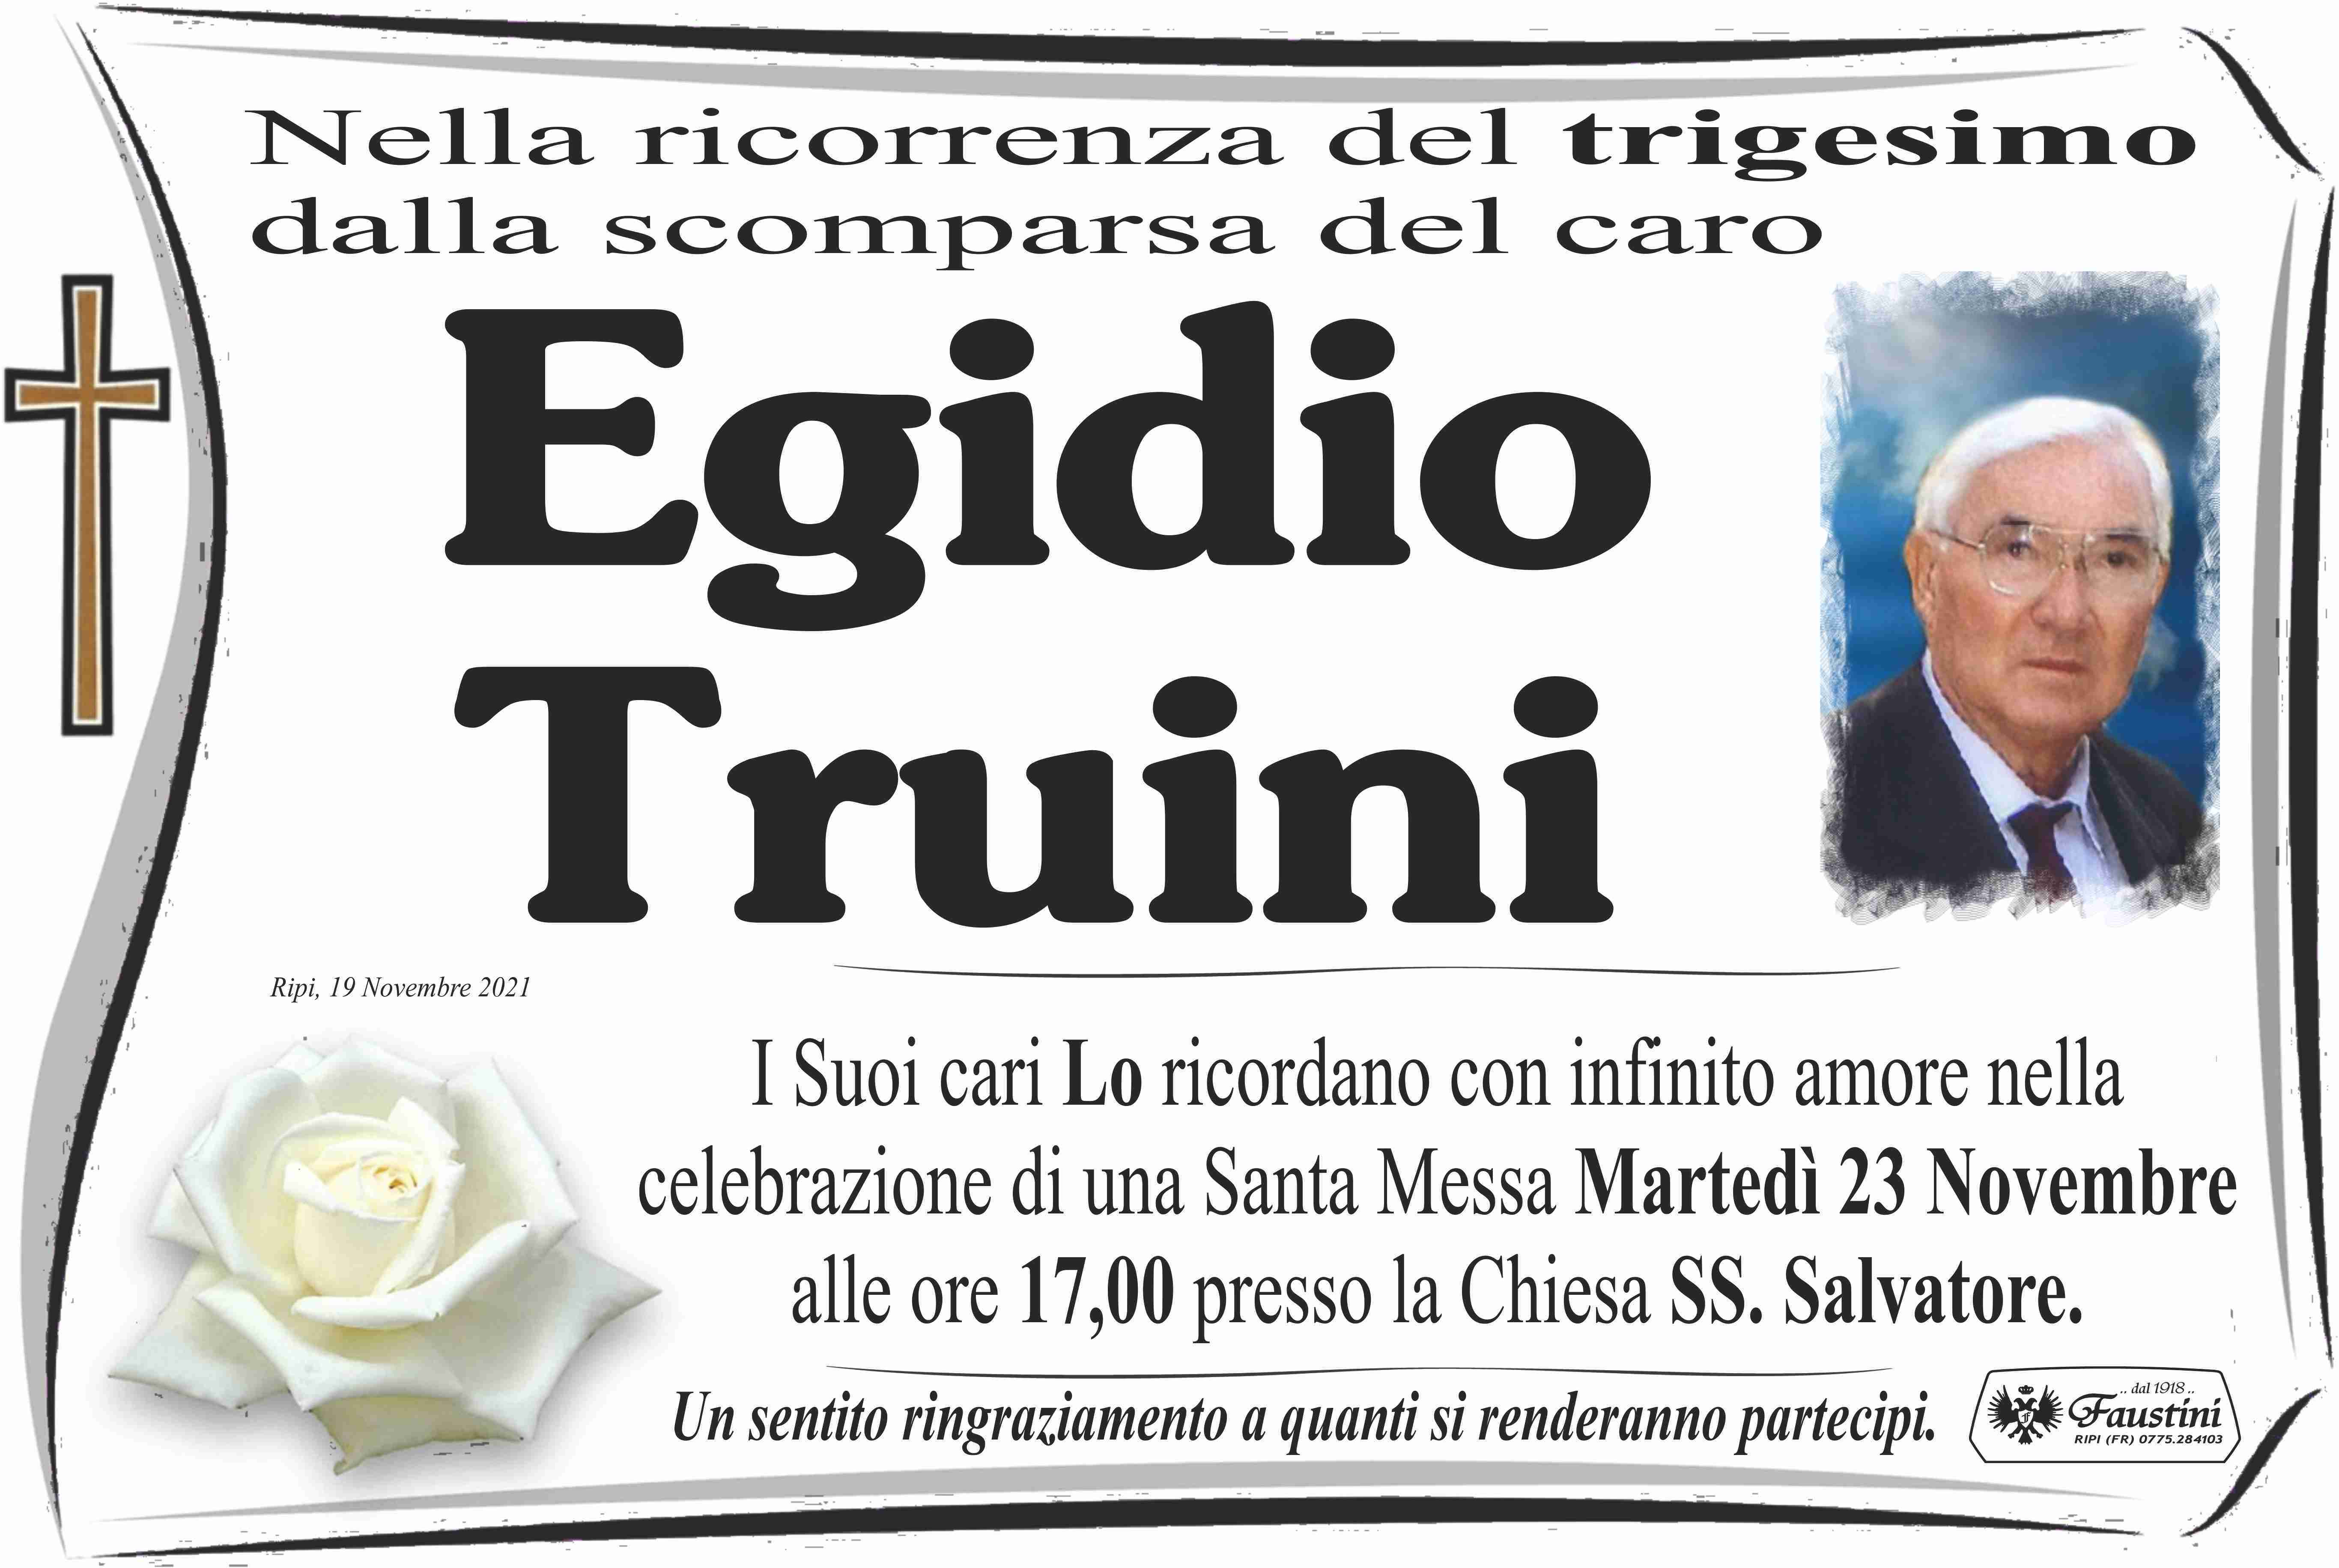 Egidio Truini